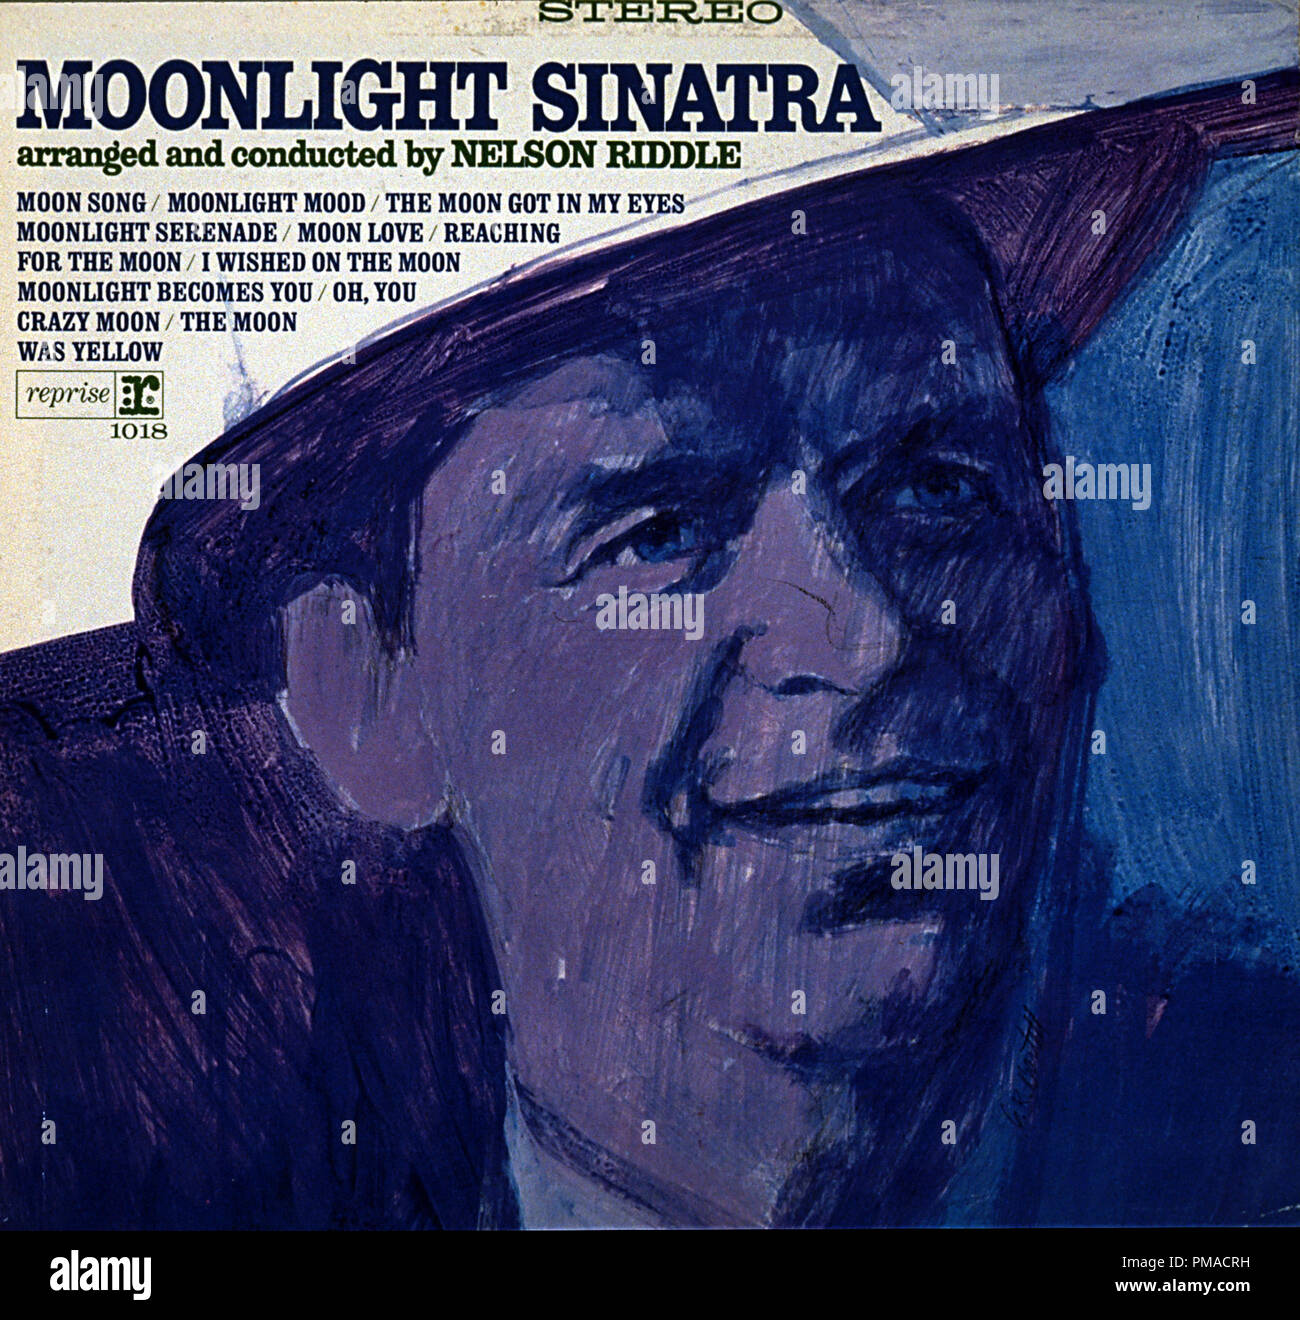 Moonlight Sinatra es un álbum de estudio de Frank Sinatra, lanzado en marzo de 1966. Todas las pistas en el álbum están centradas alrededor de la luna, y fueron organizadas y realizadas por Nelson Riddle y su orquesta. Archivo de referencia # 32368 423tha Foto de stock